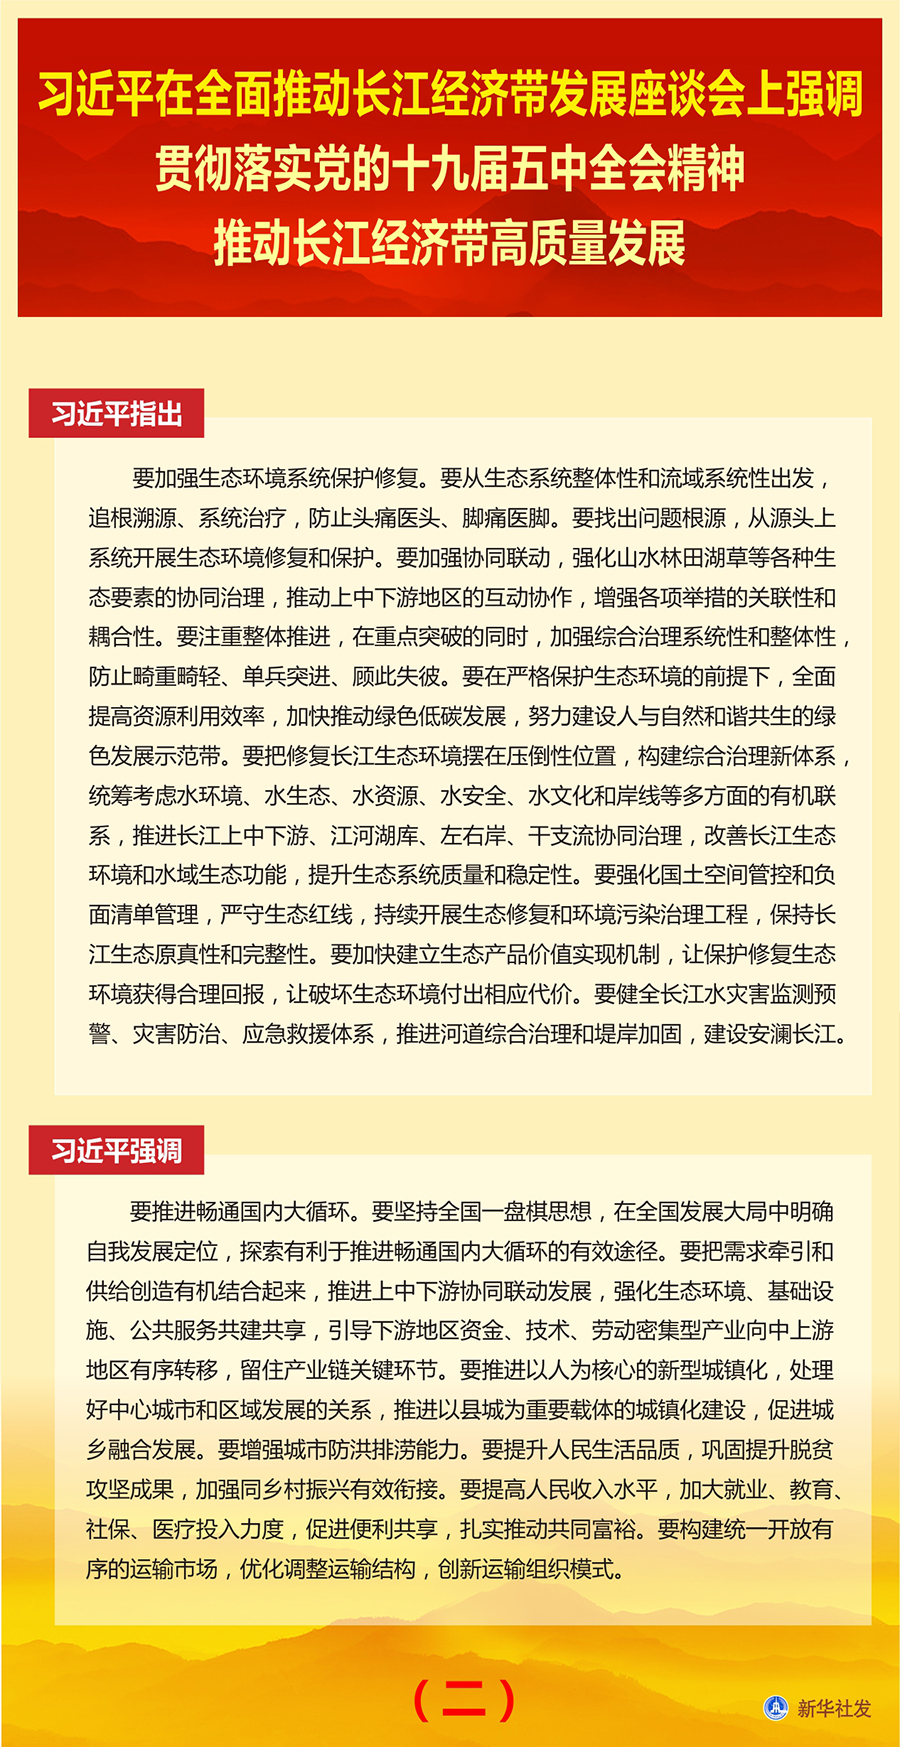 习近平在全面推动长江经济带发展座谈会上发表讲话(图4)